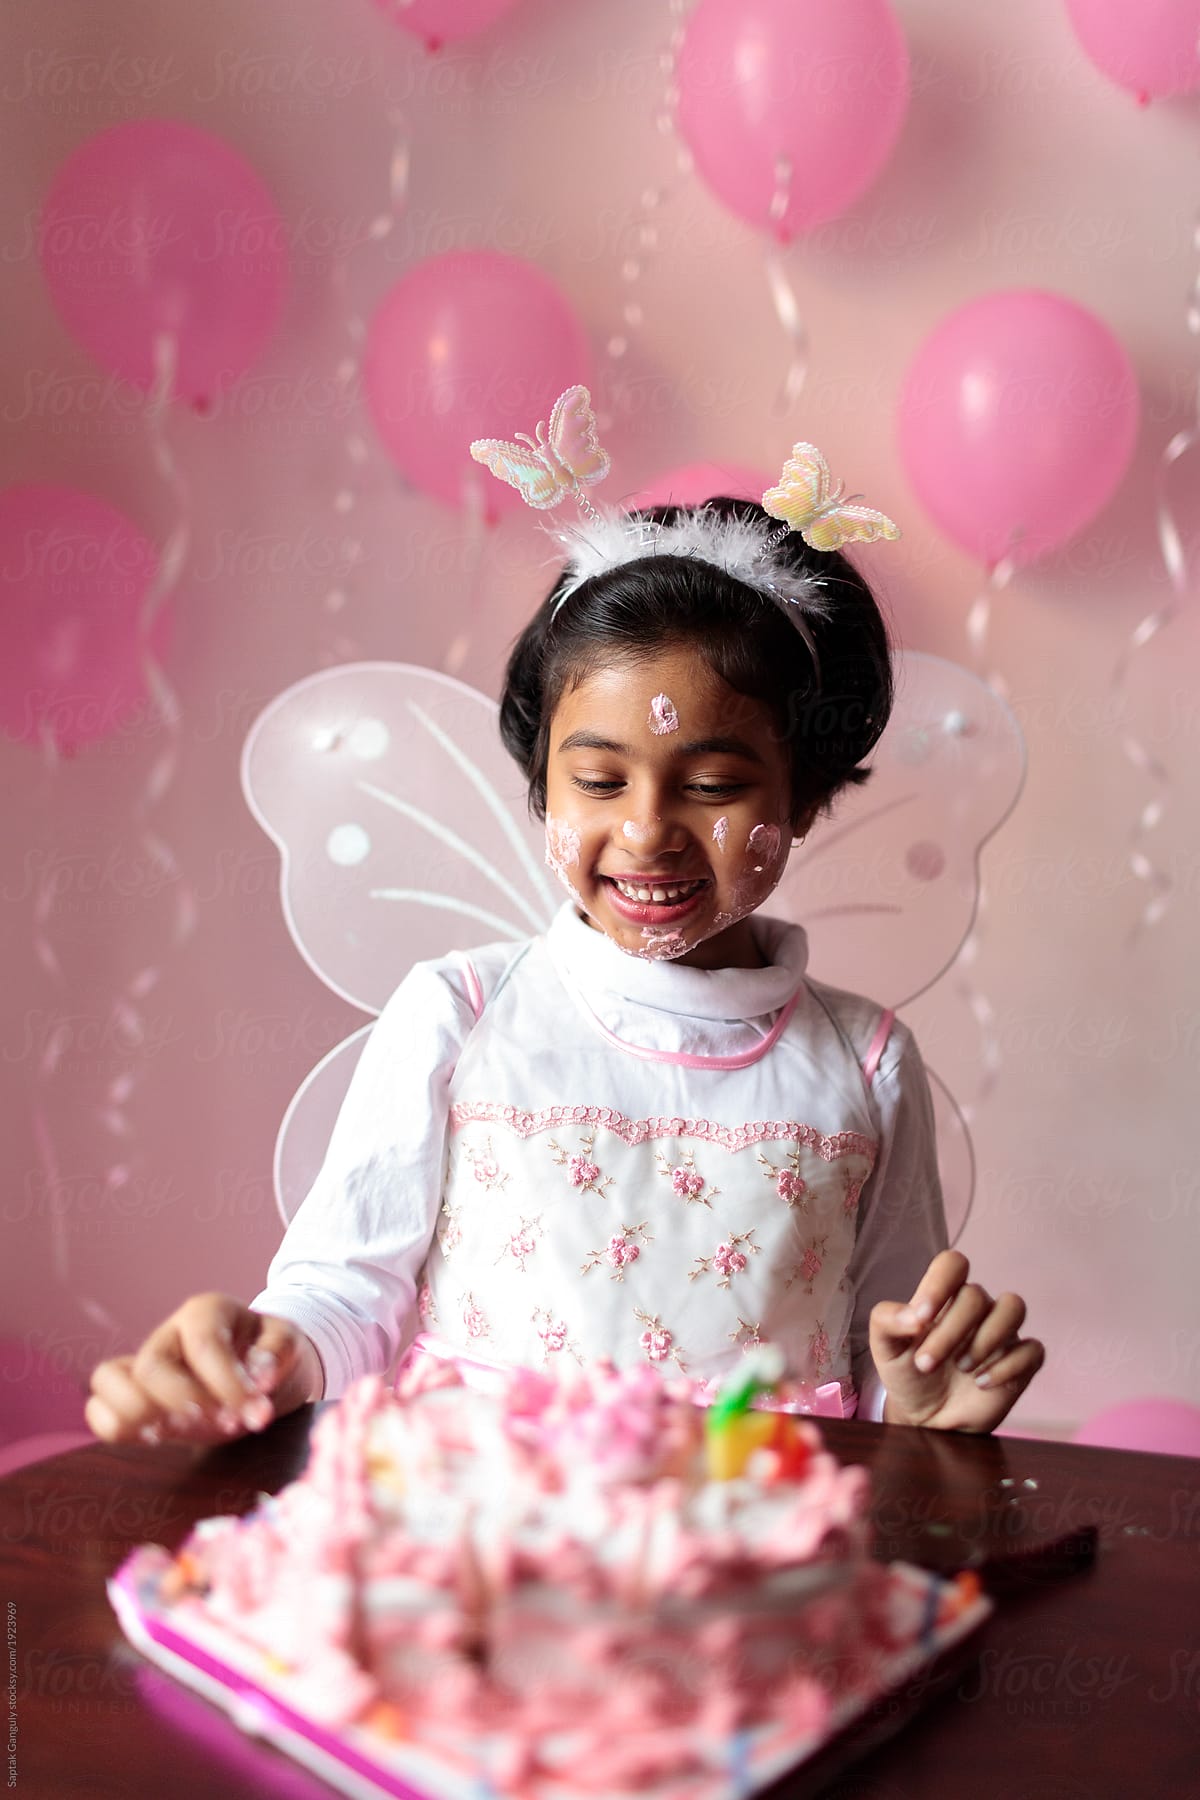 Cute little girl enjoying her birthday cake